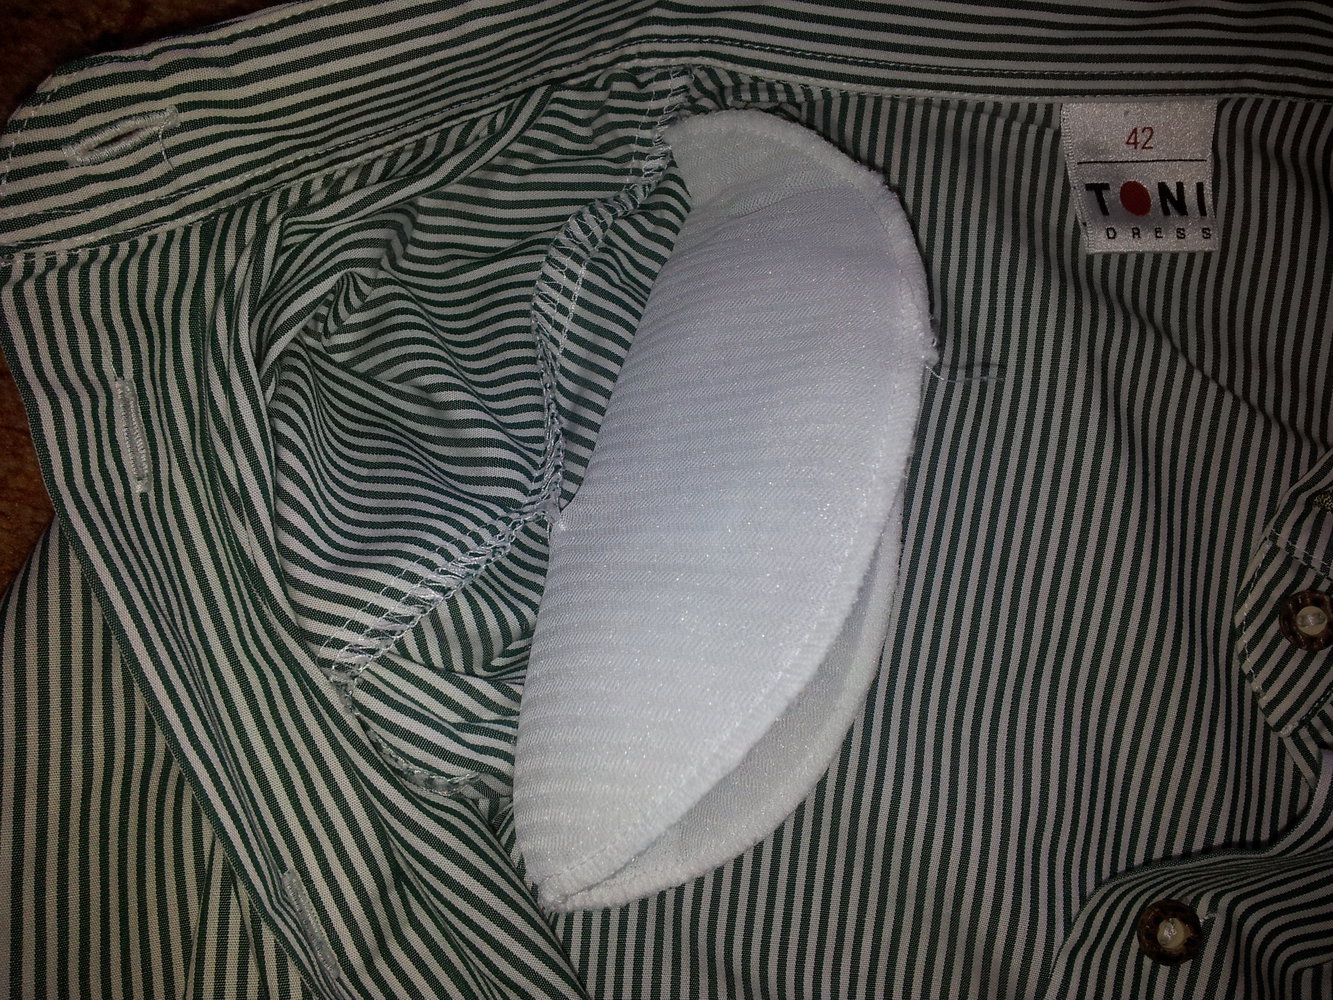  Trachten Bluse grün weiß Streifen Toni Dress Gr. 42 NEU